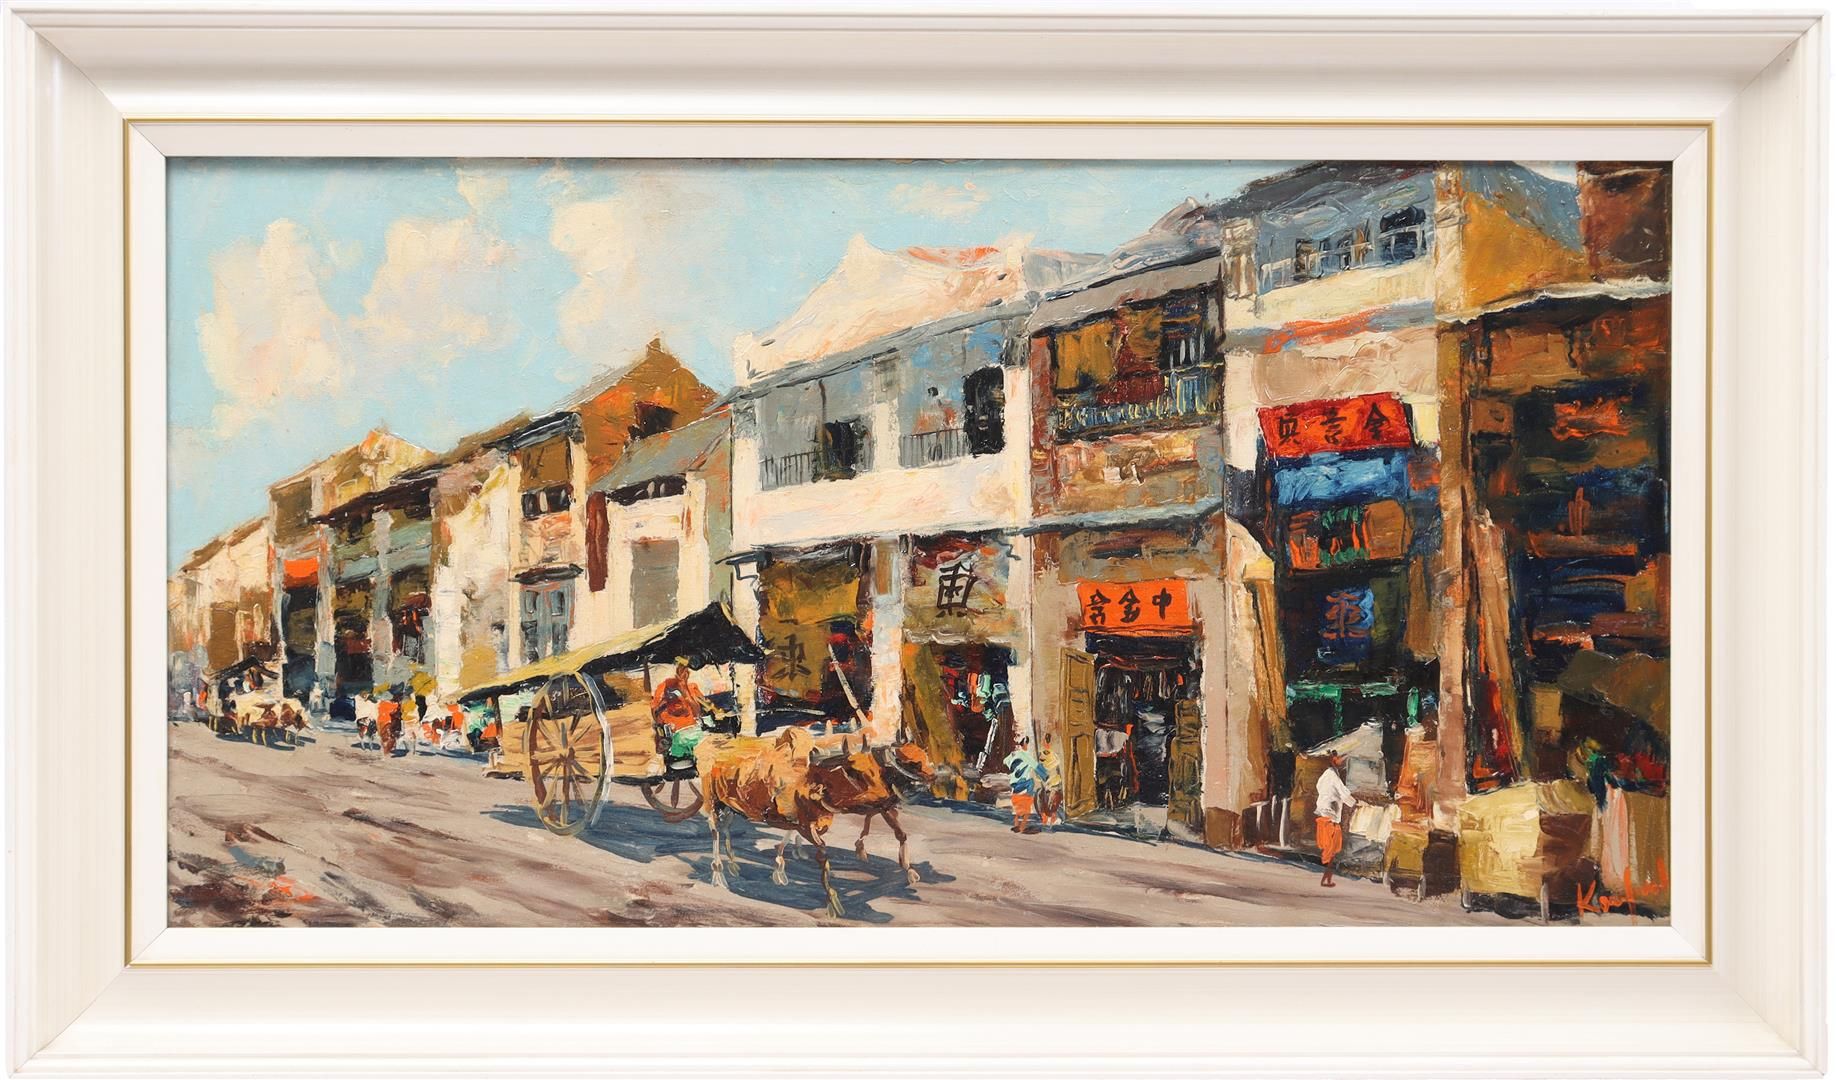 Sujatno Koempoel 苏雅特诺-科姆波尔(1912-1987)

街头场景，带车的卡拉布和许多商店，帆布42x85厘米